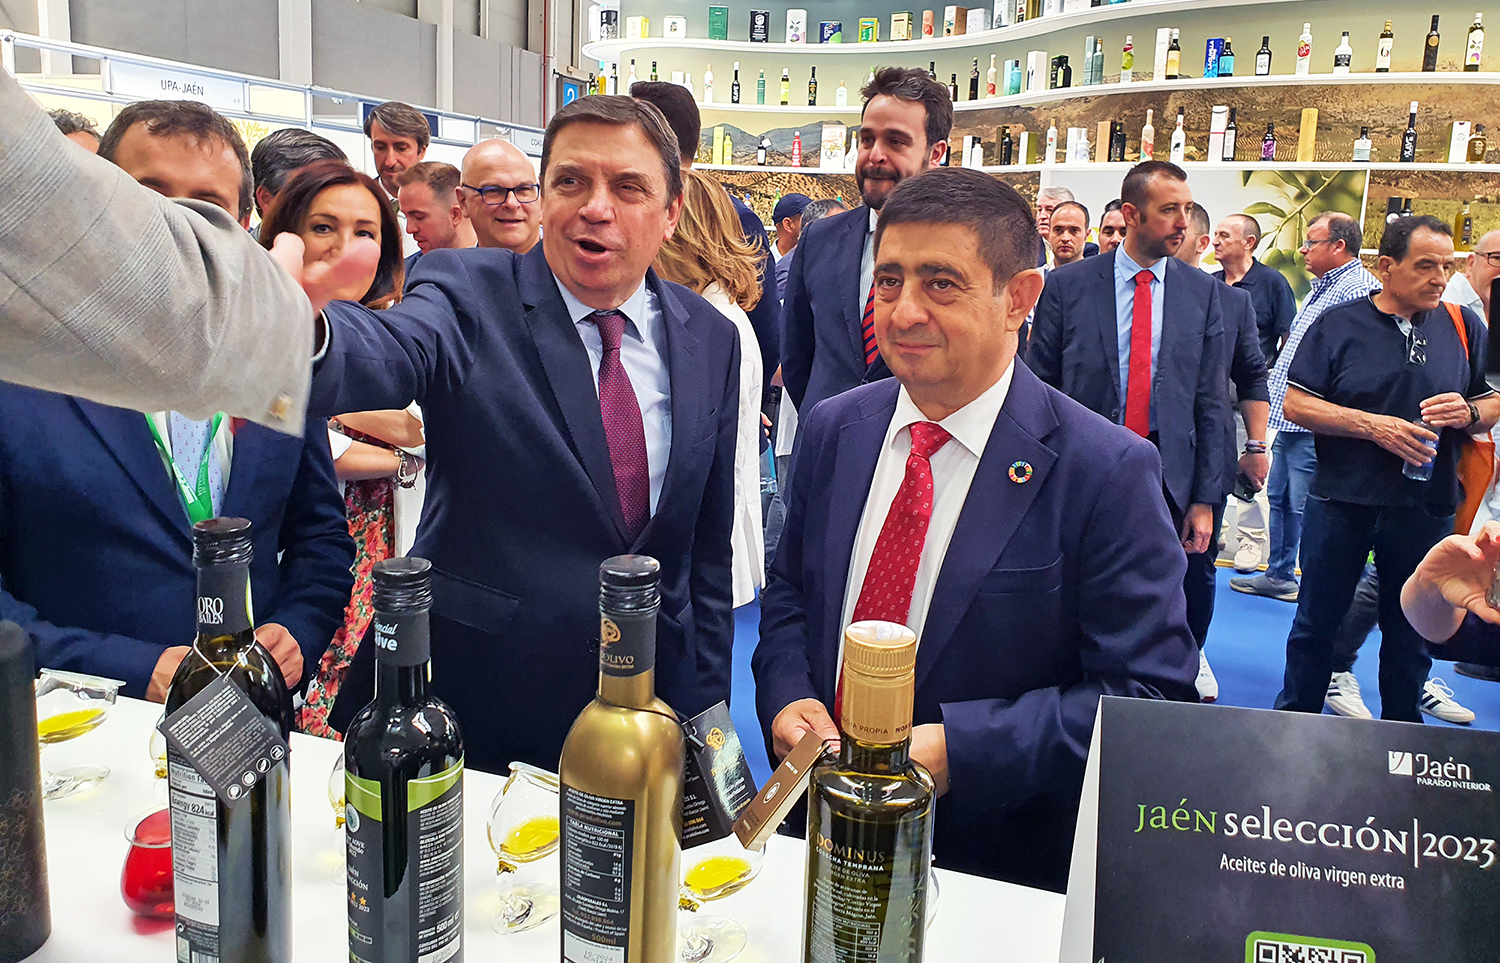 El ministro Luis Planas defiende la excelencia del aceite de oliva, “un alimento cuya calidad debemos preservar”, durante su visita a la Expoliva